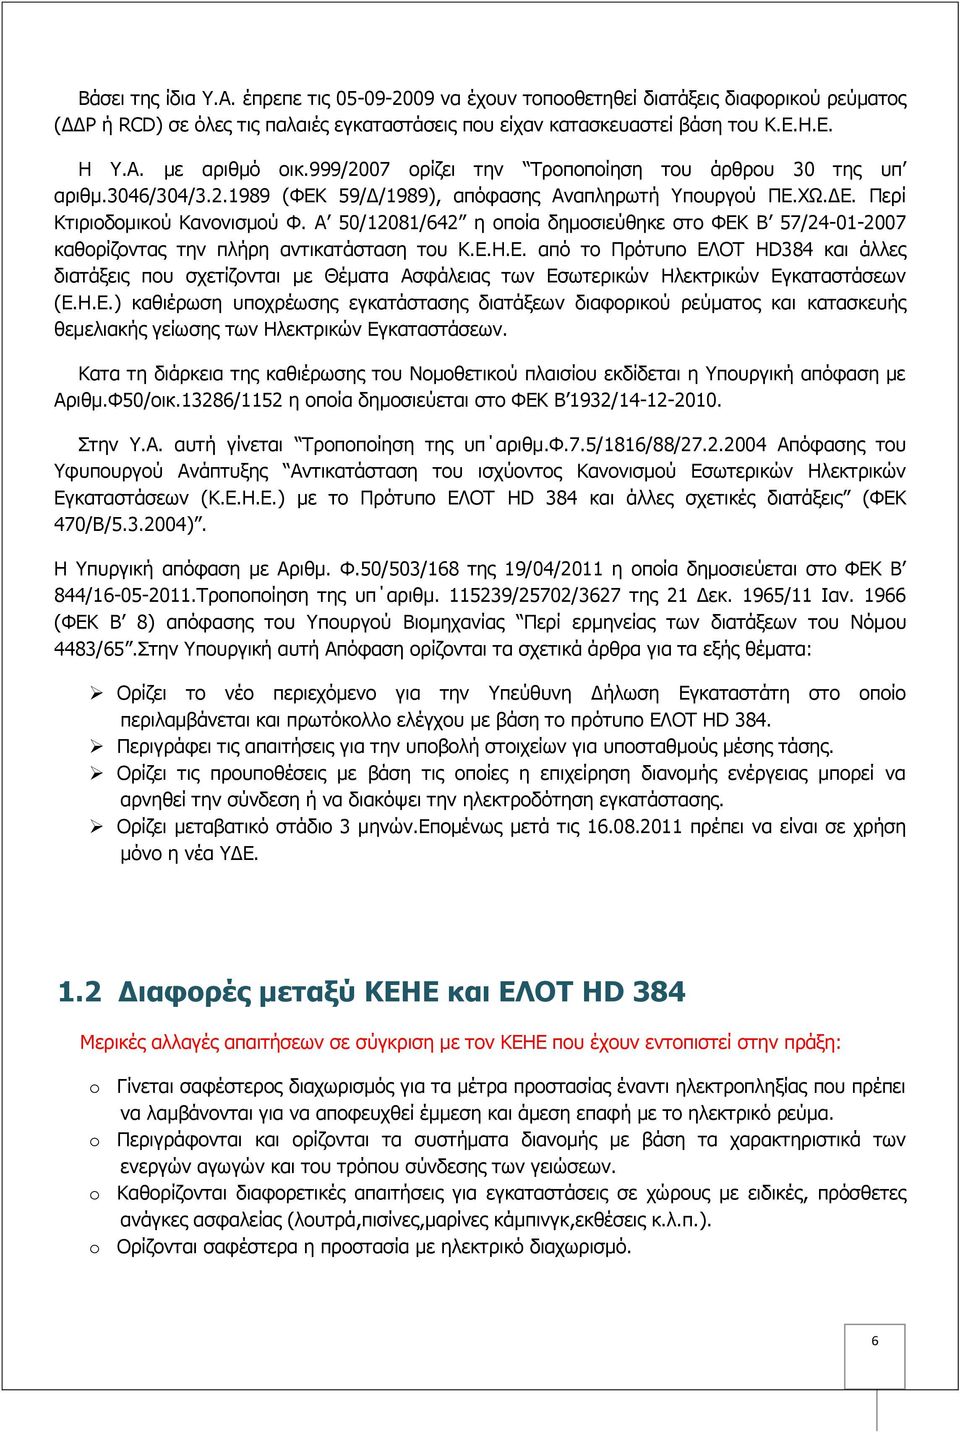 Α 50/12081/642 η οποία δημοσιεύθηκε στο ΦΕΚ Β 57/24-01-2007 καθορίζοντας την πλήρη αντικατάσταση του Κ.Ε.Η.Ε. από το Πρότυπο ΕΛΟΤ HD384 και άλλες διατάξεις που σχετίζονται με Θέματα Ασφάλειας των Εσωτερικών Ηλεκτρικών Εγκαταστάσεων (Ε.